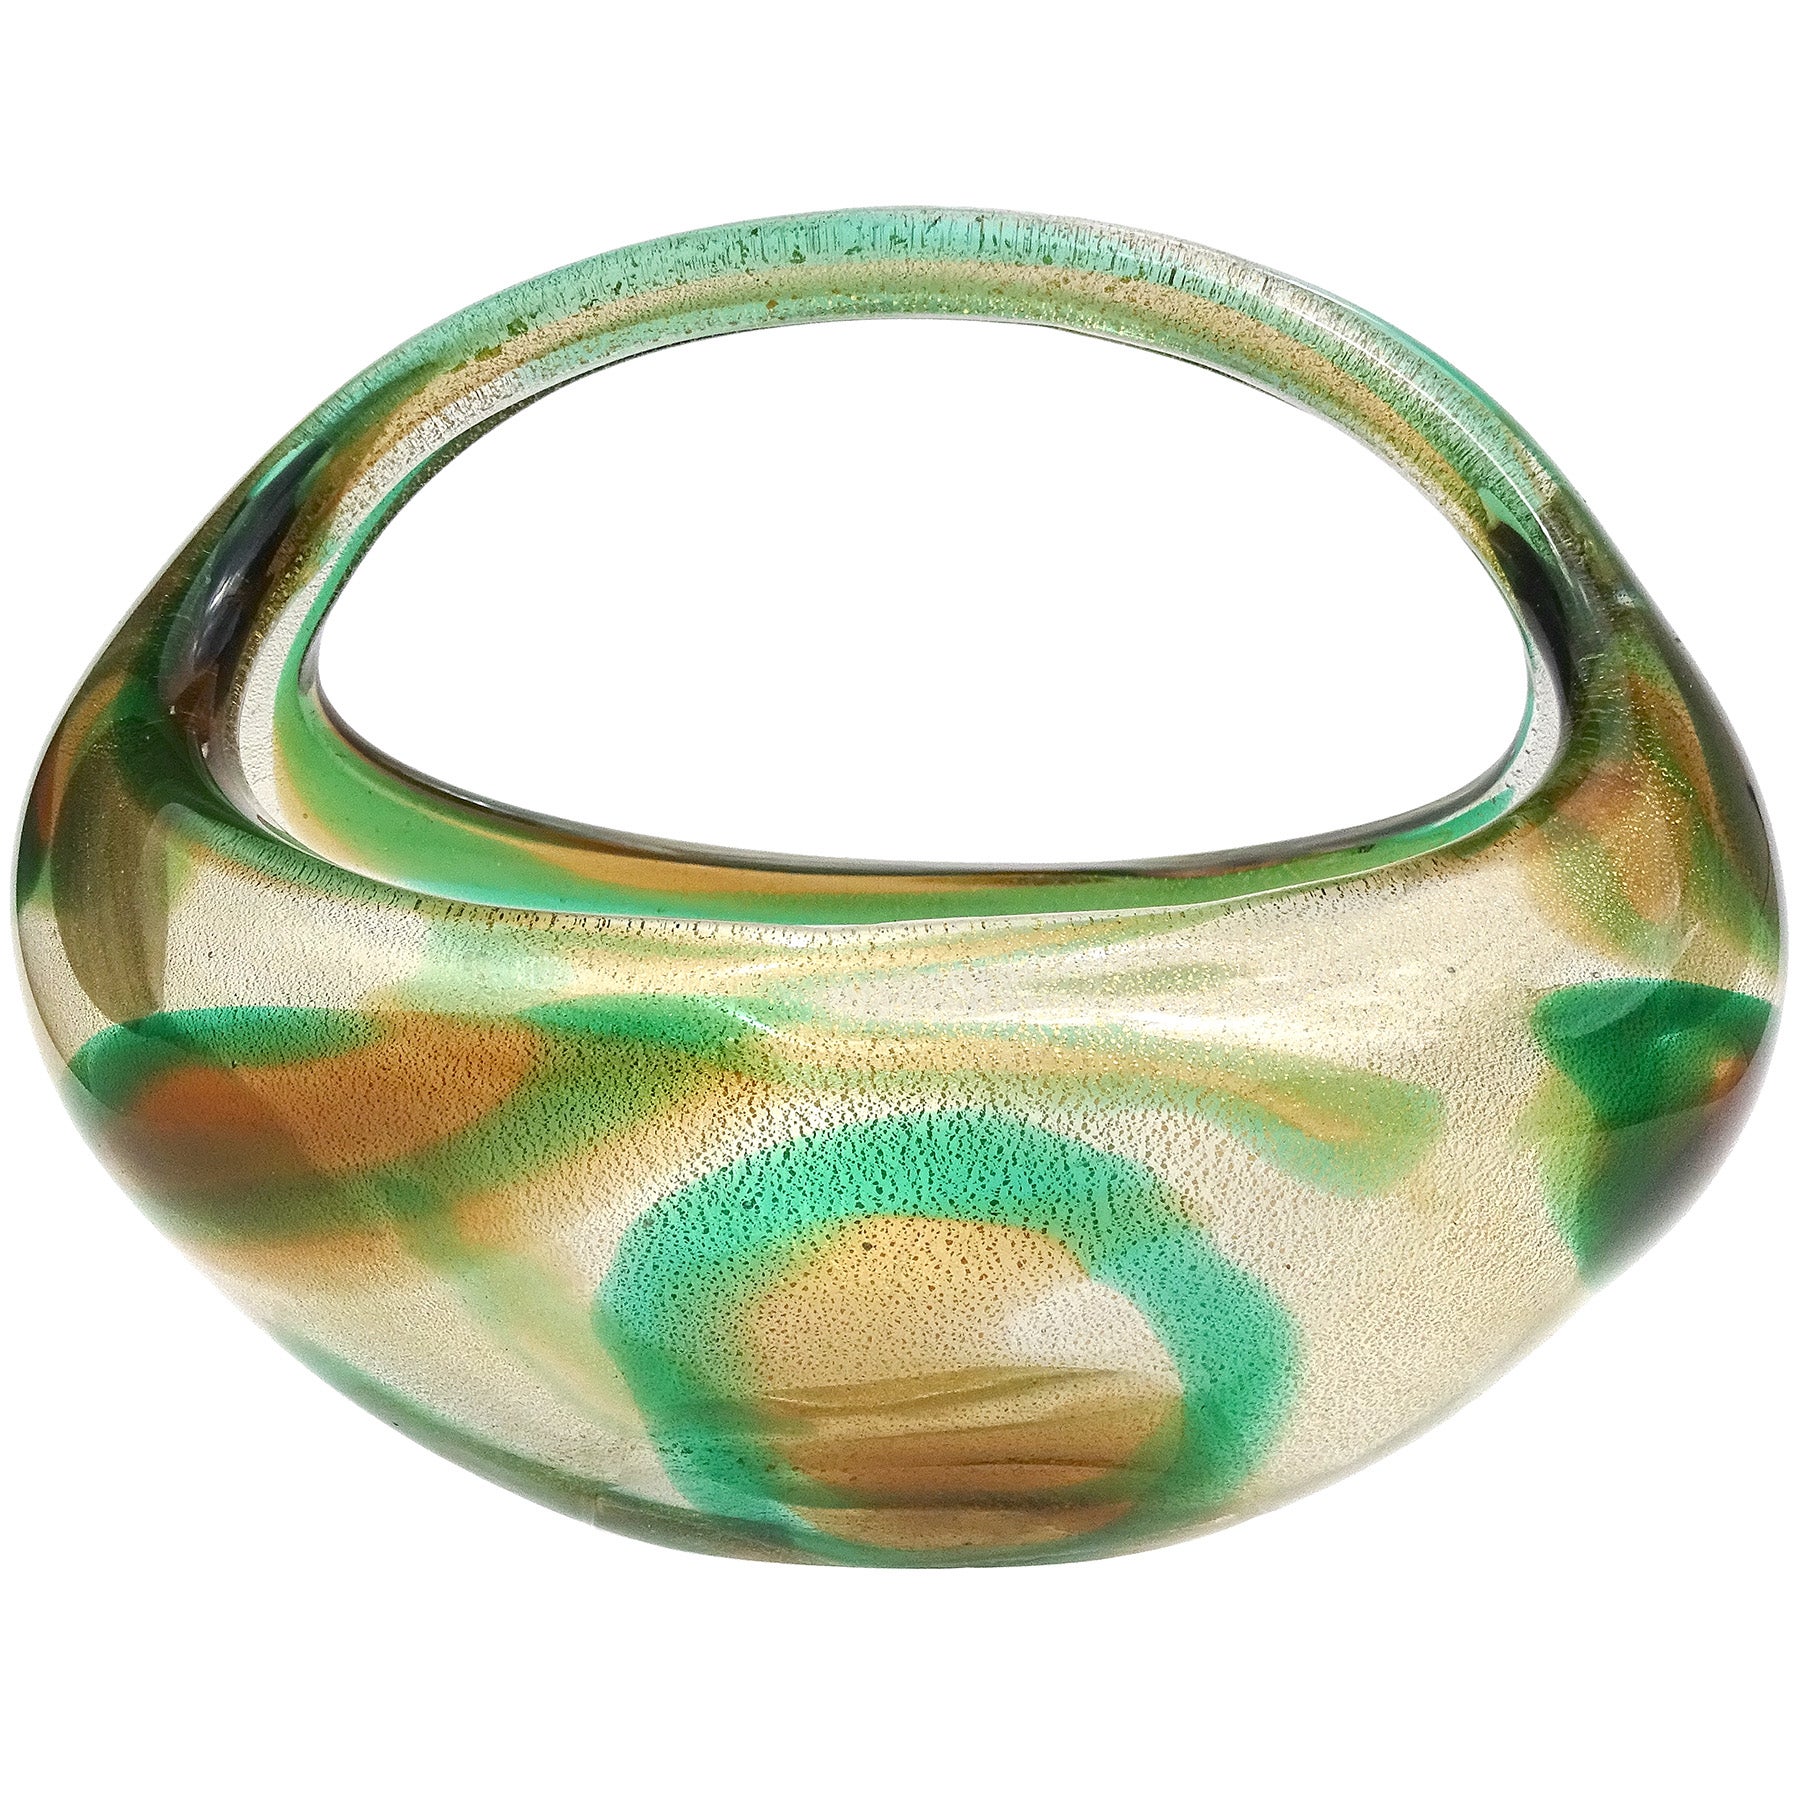 Seguso Murano 1952 Macchia Ambra Verde Gold Flecks Italian Art Glass Basket Vase